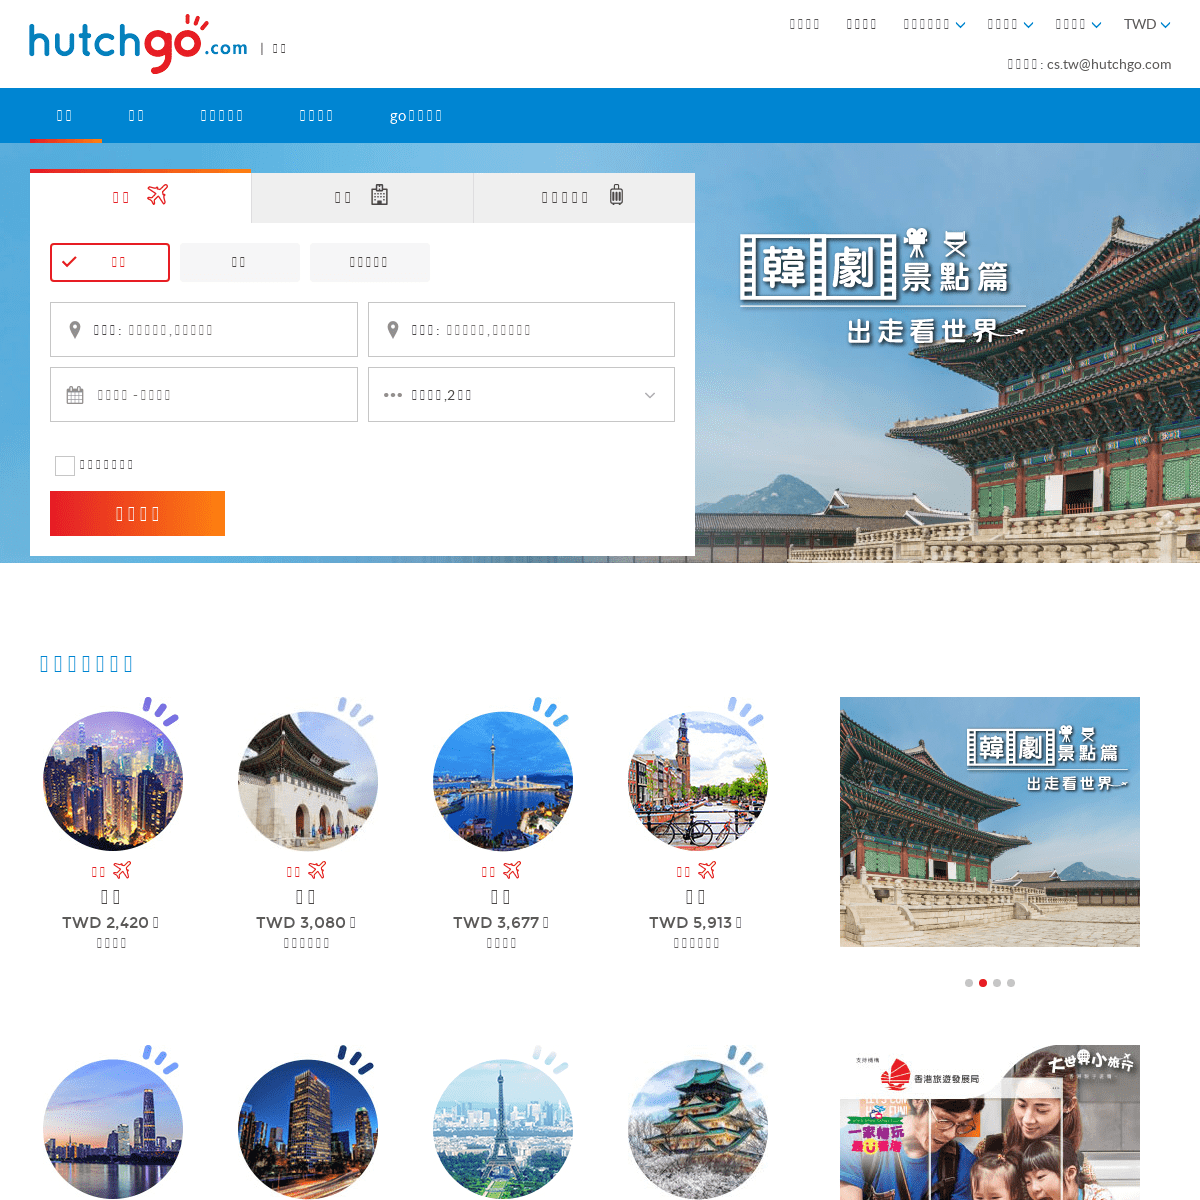 精選全球特惠自由行套票,機票,飯店 | hutchgo.com 台灣